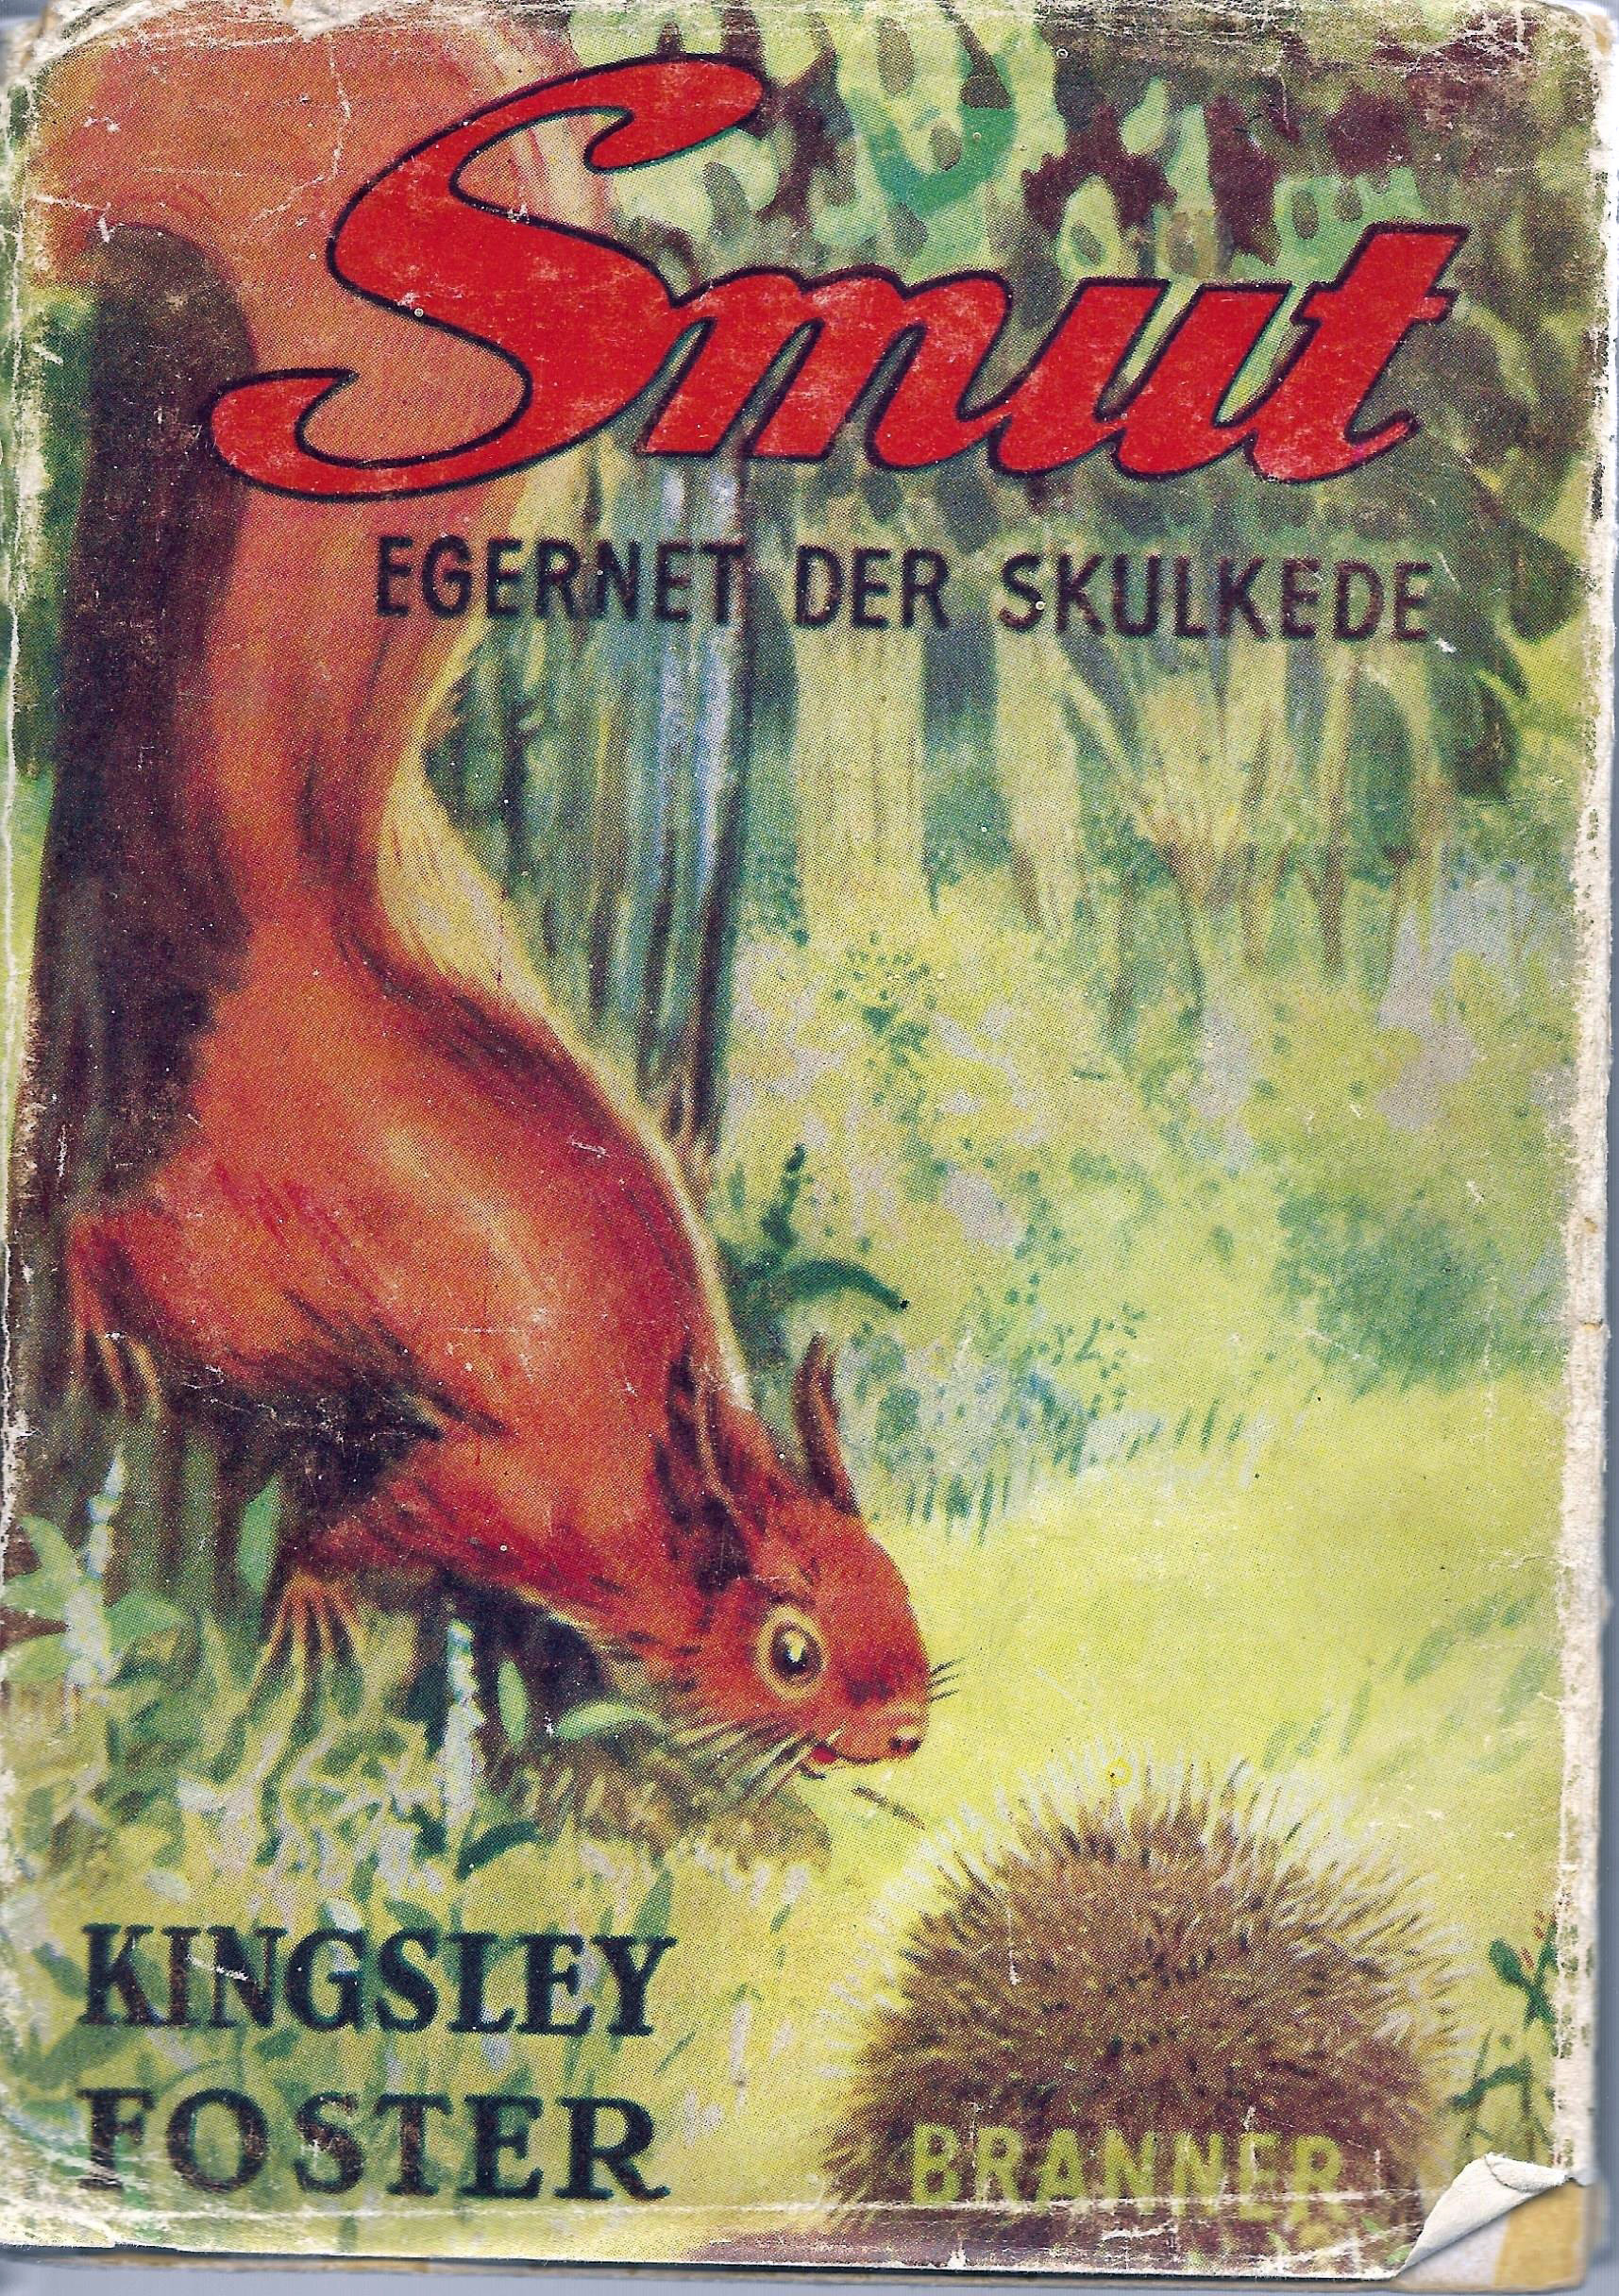 Smut - Egernet der skulkede - Kingsley Foster 1949